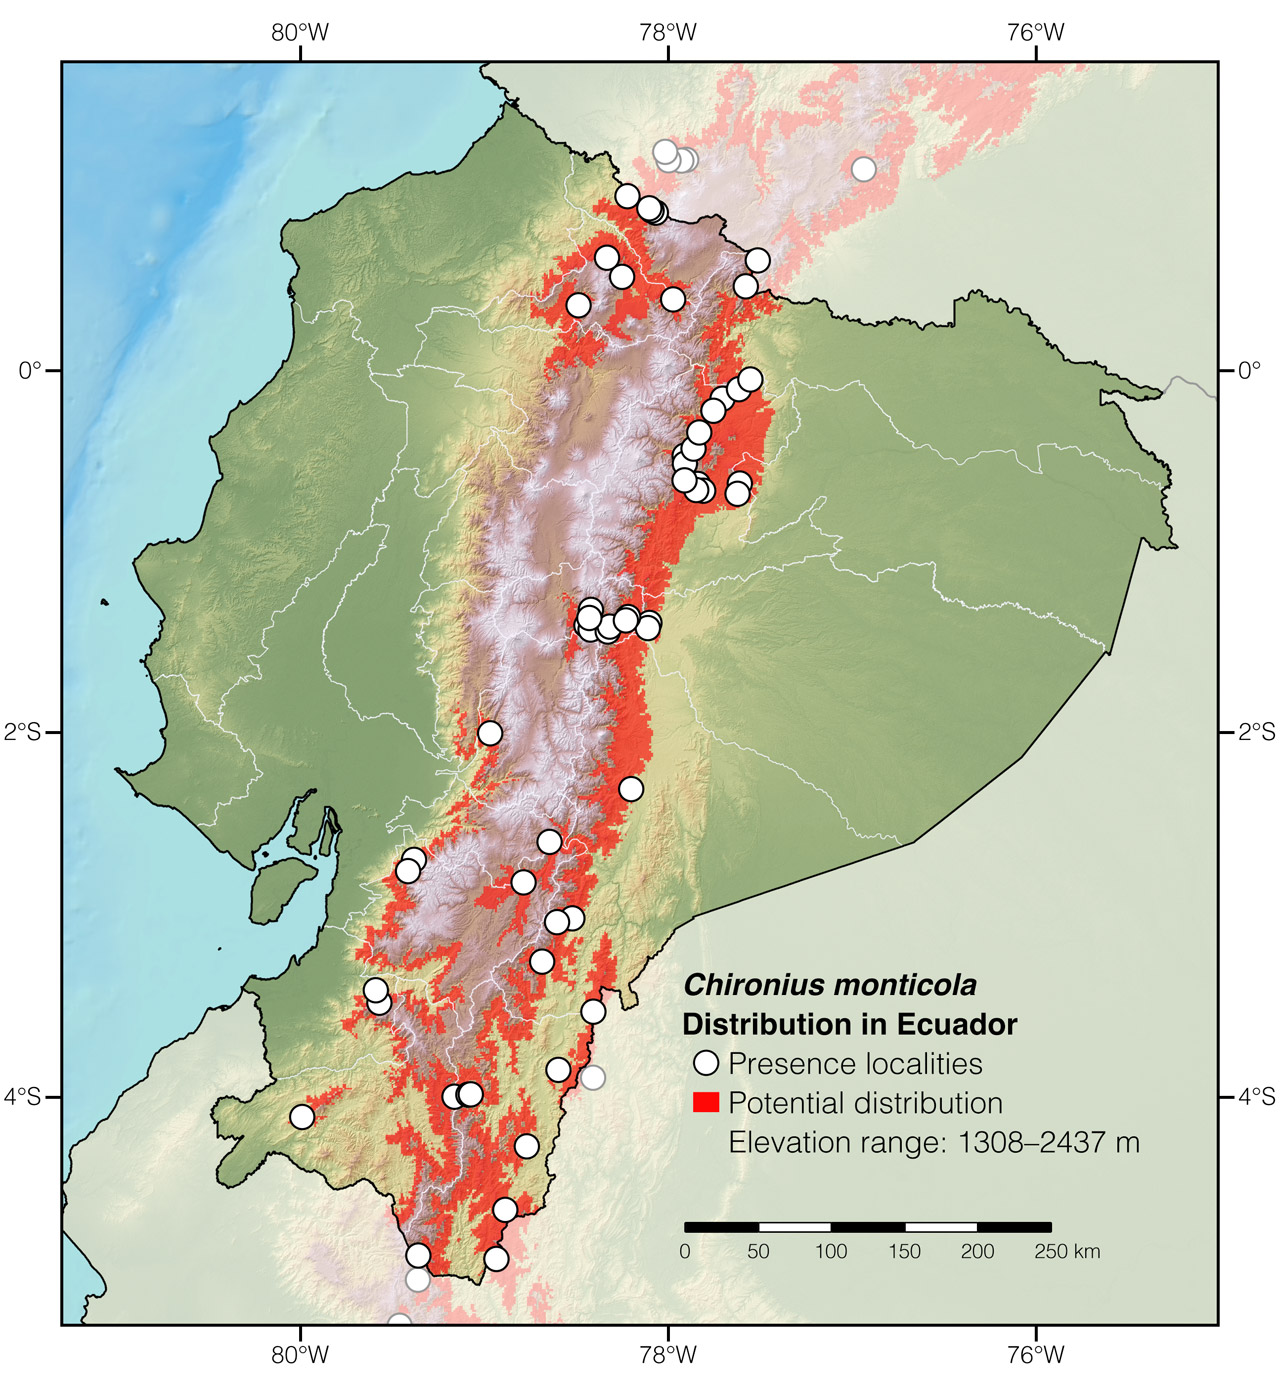 Distribution of Chironius monticola in Ecuador